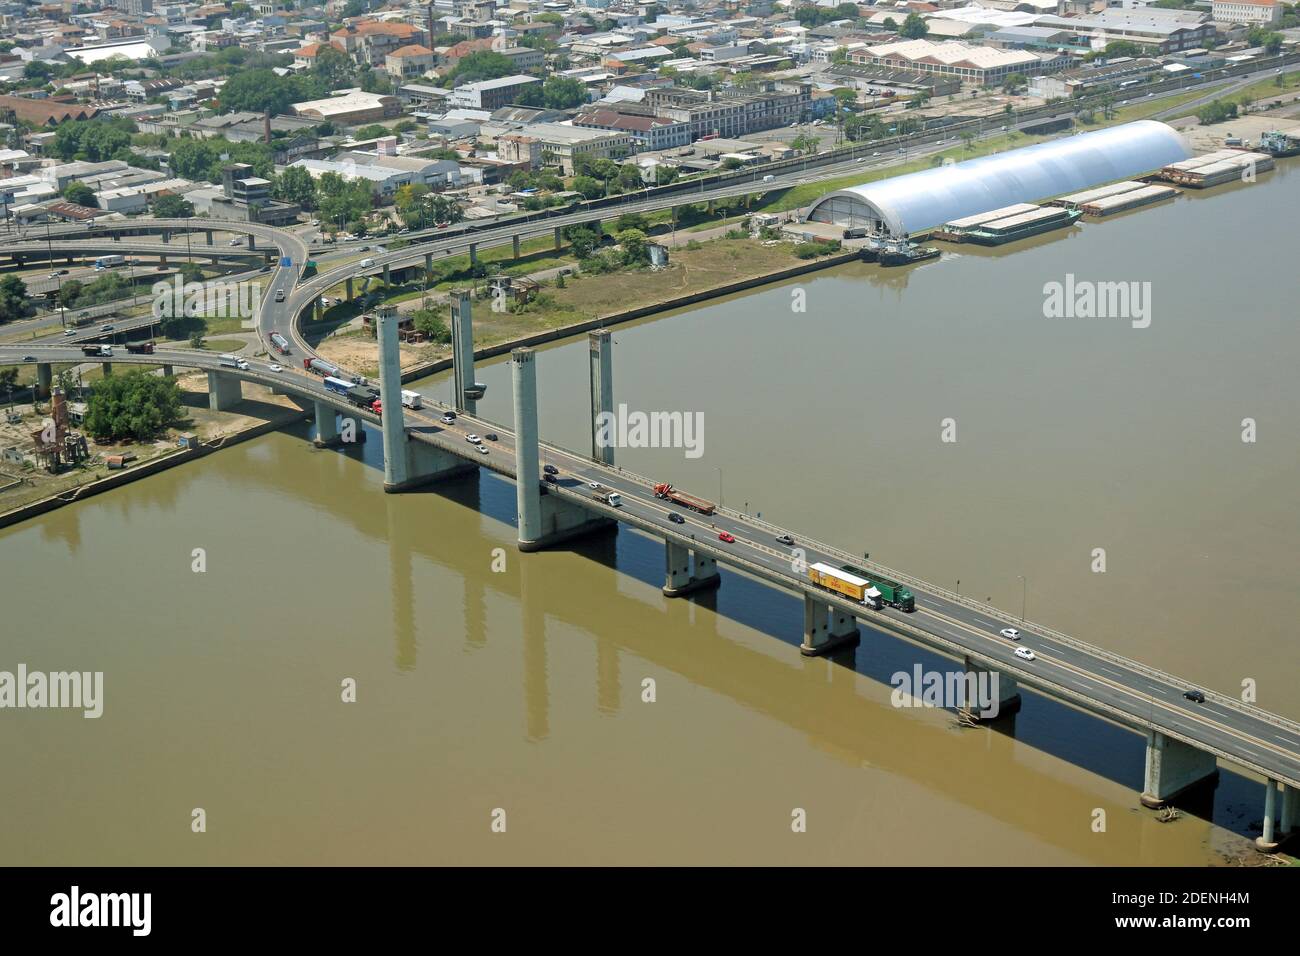 Luftaufnahme der südlichen Region der Hauptstadt des Bundesstaates Rio Grande do Sul, Porto Alegre, im Süden Brasiliens. Stockfoto